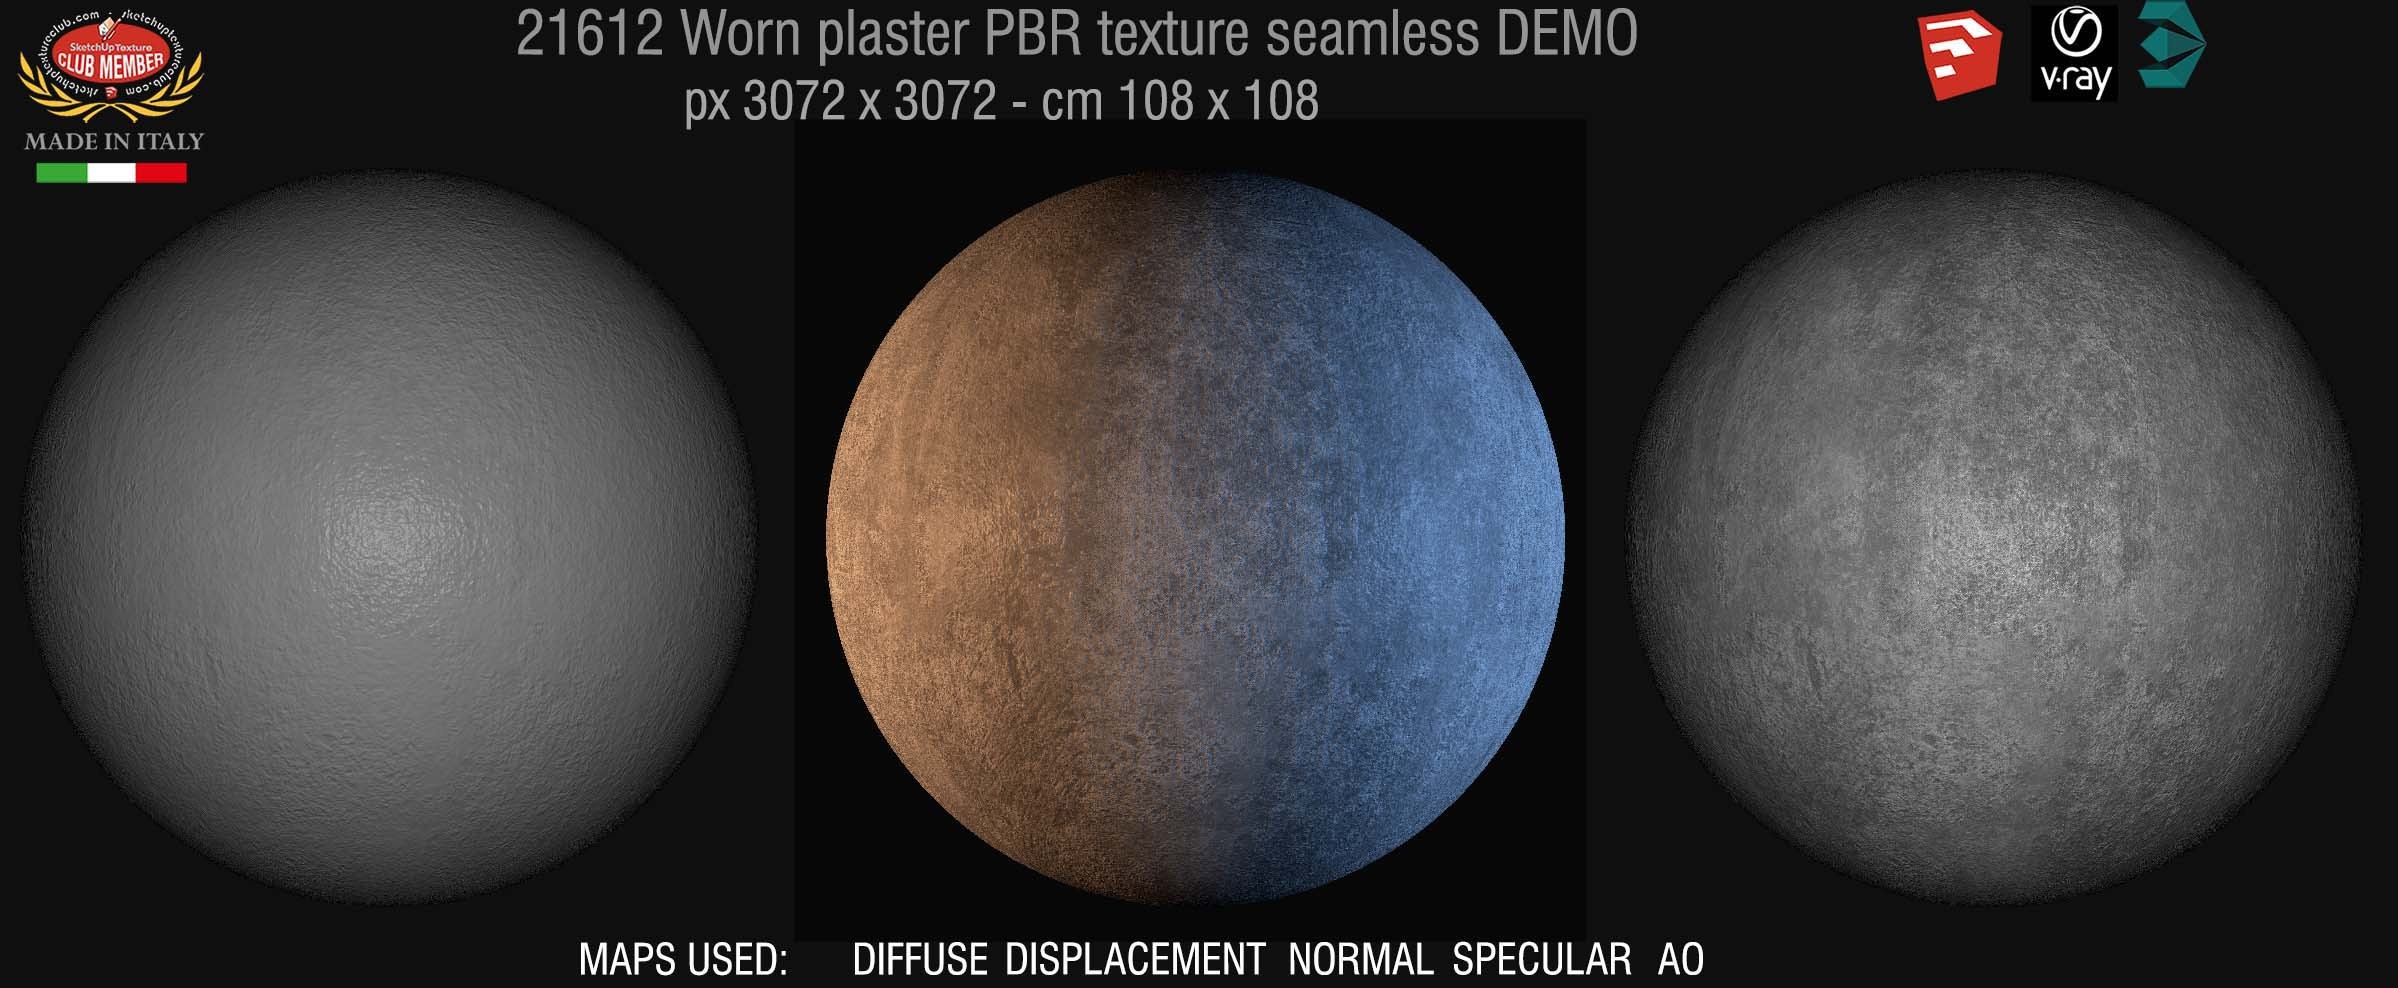 21612 worn plaster PBR texture seamless DEMO